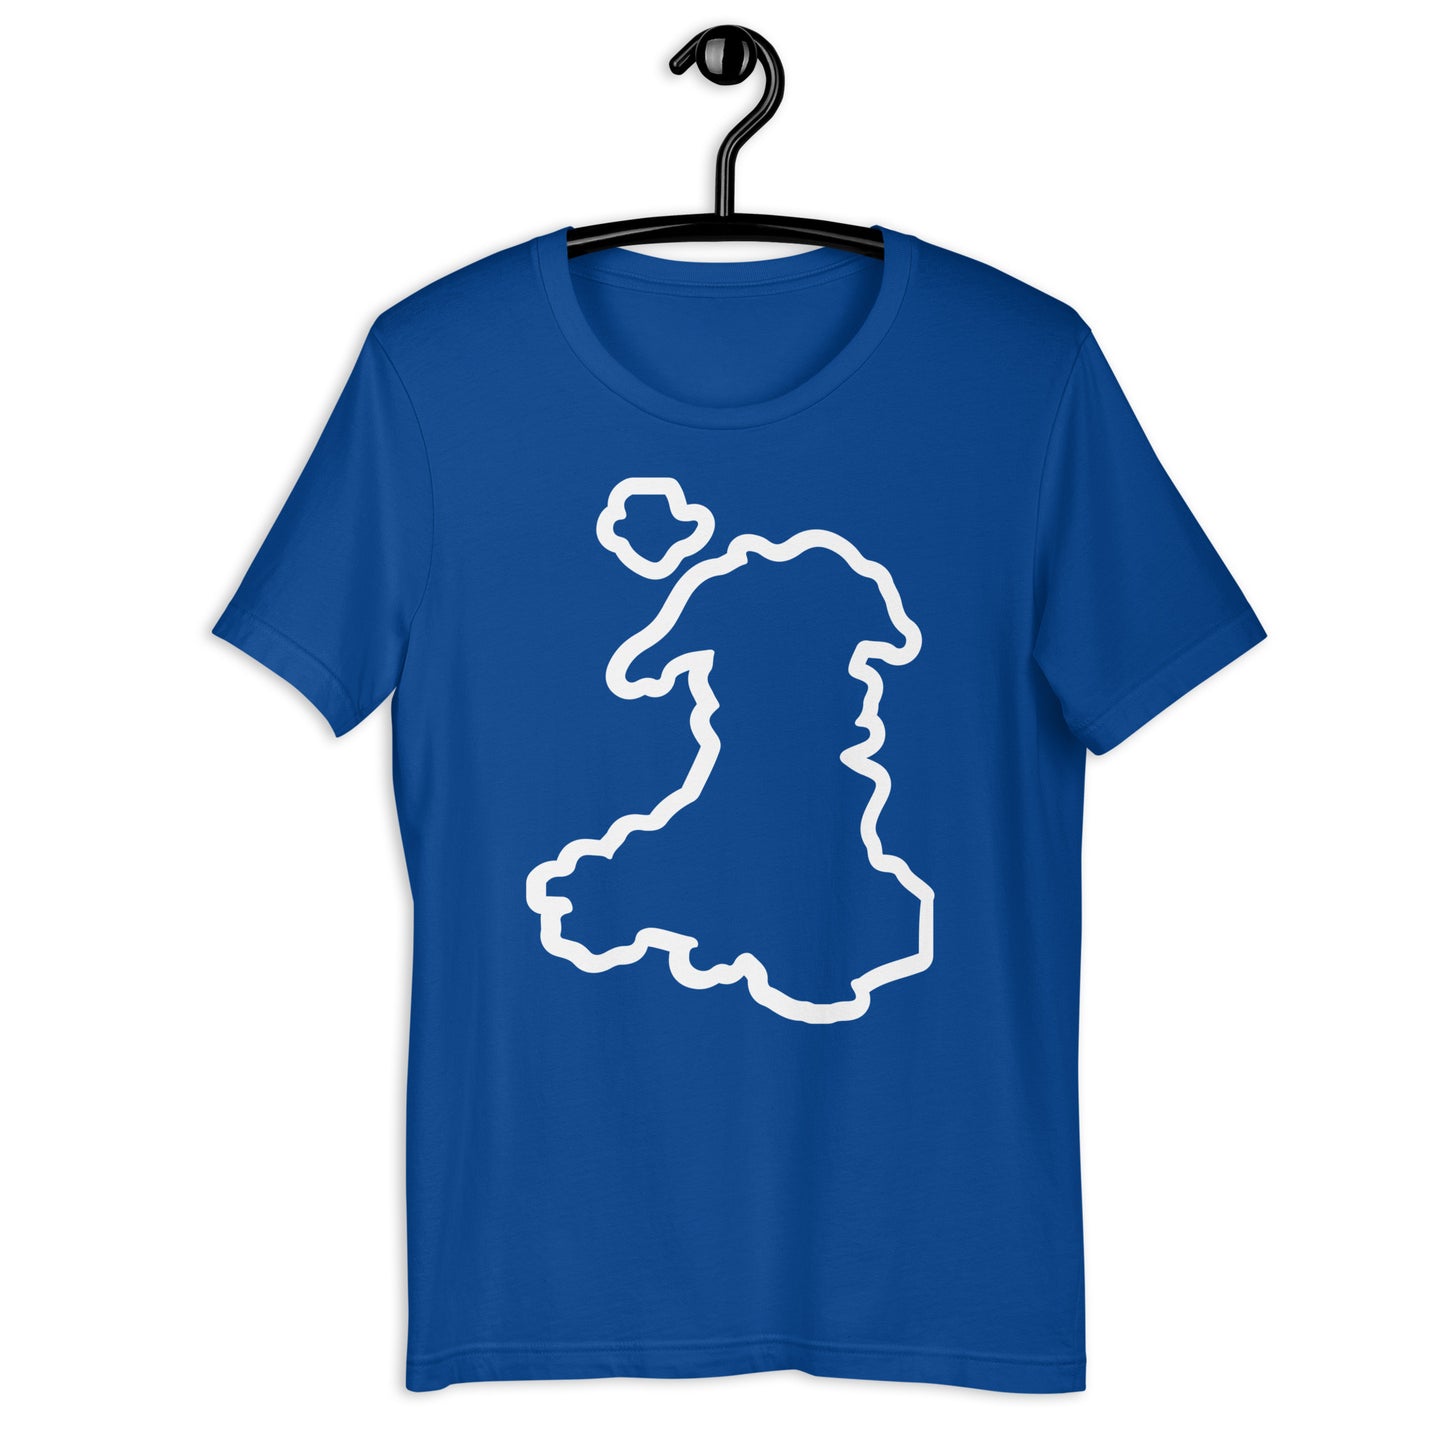 Cymru/Wales - Unisex t-shirt